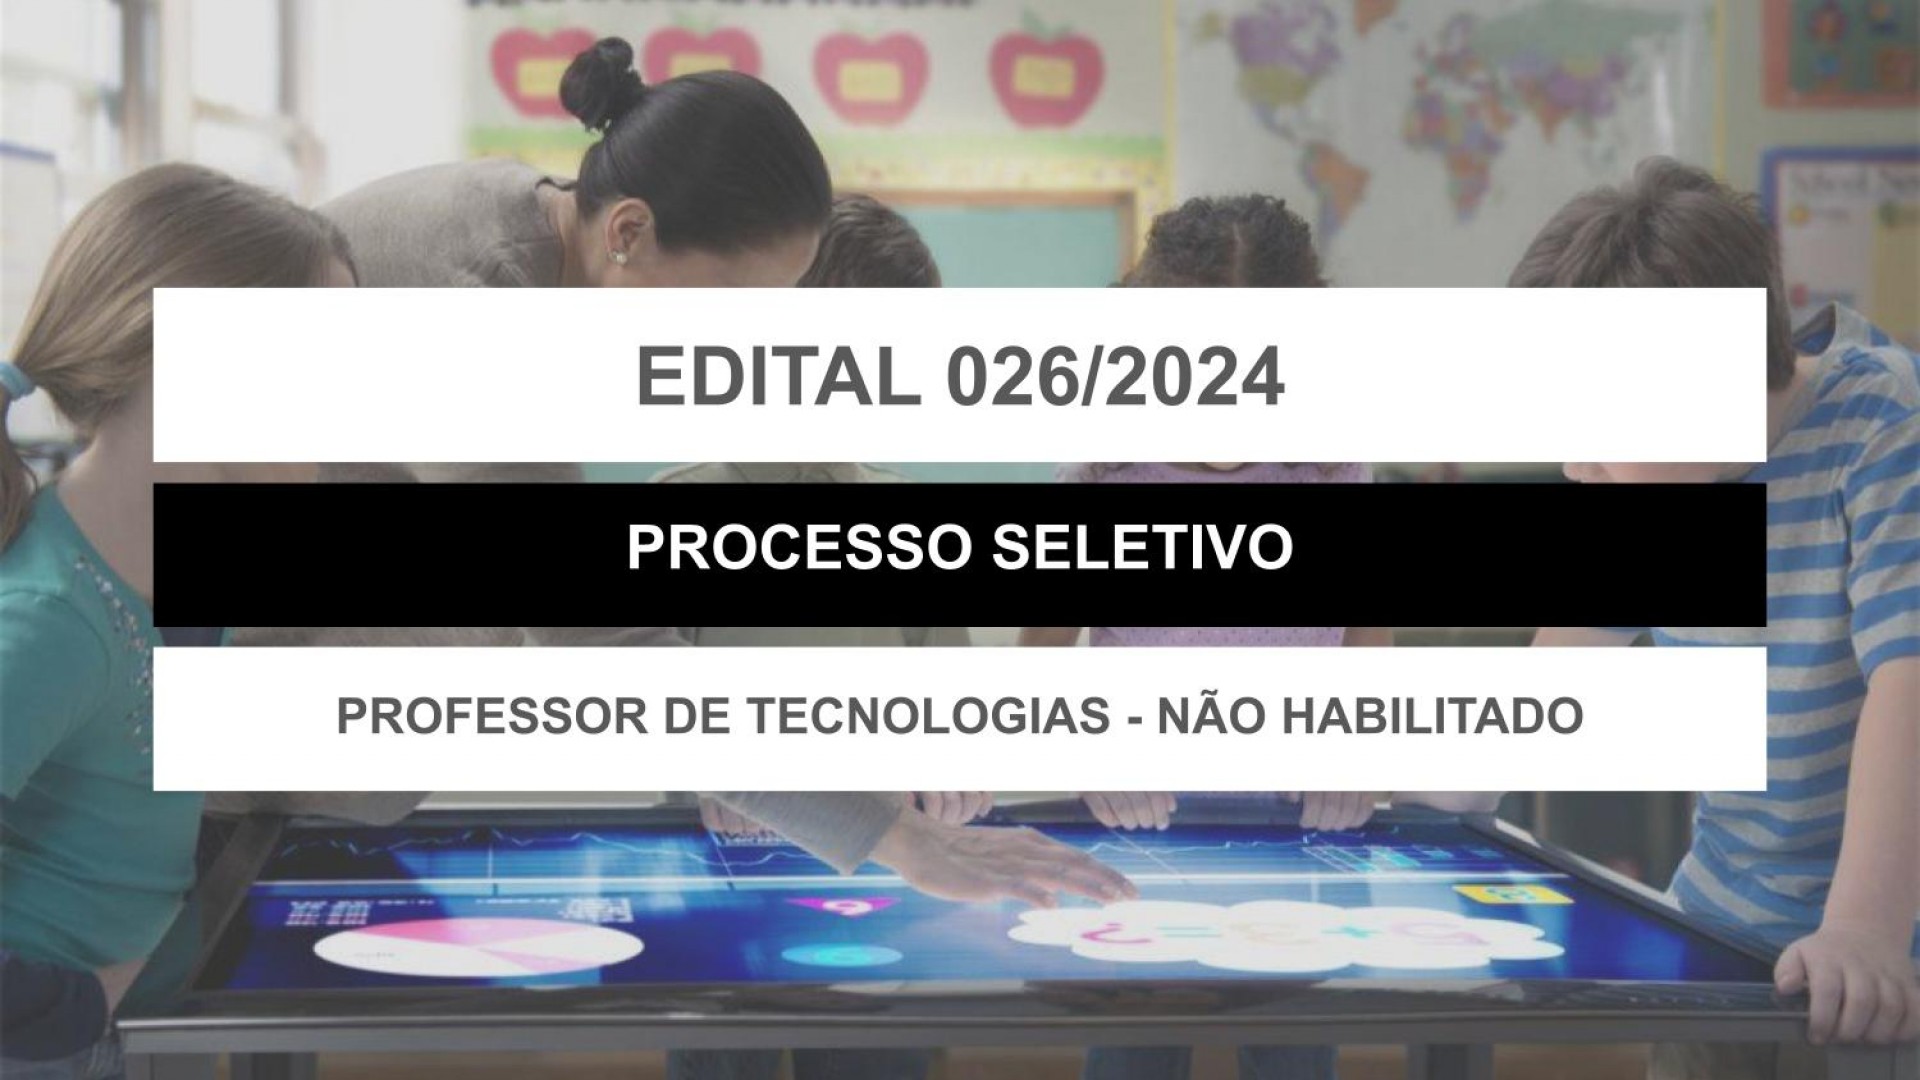 EDITAL EDUCAÇÃO Nº 026/2024 - PROFESSOR DE TECNOLOGIA - NÃO HABILITADO